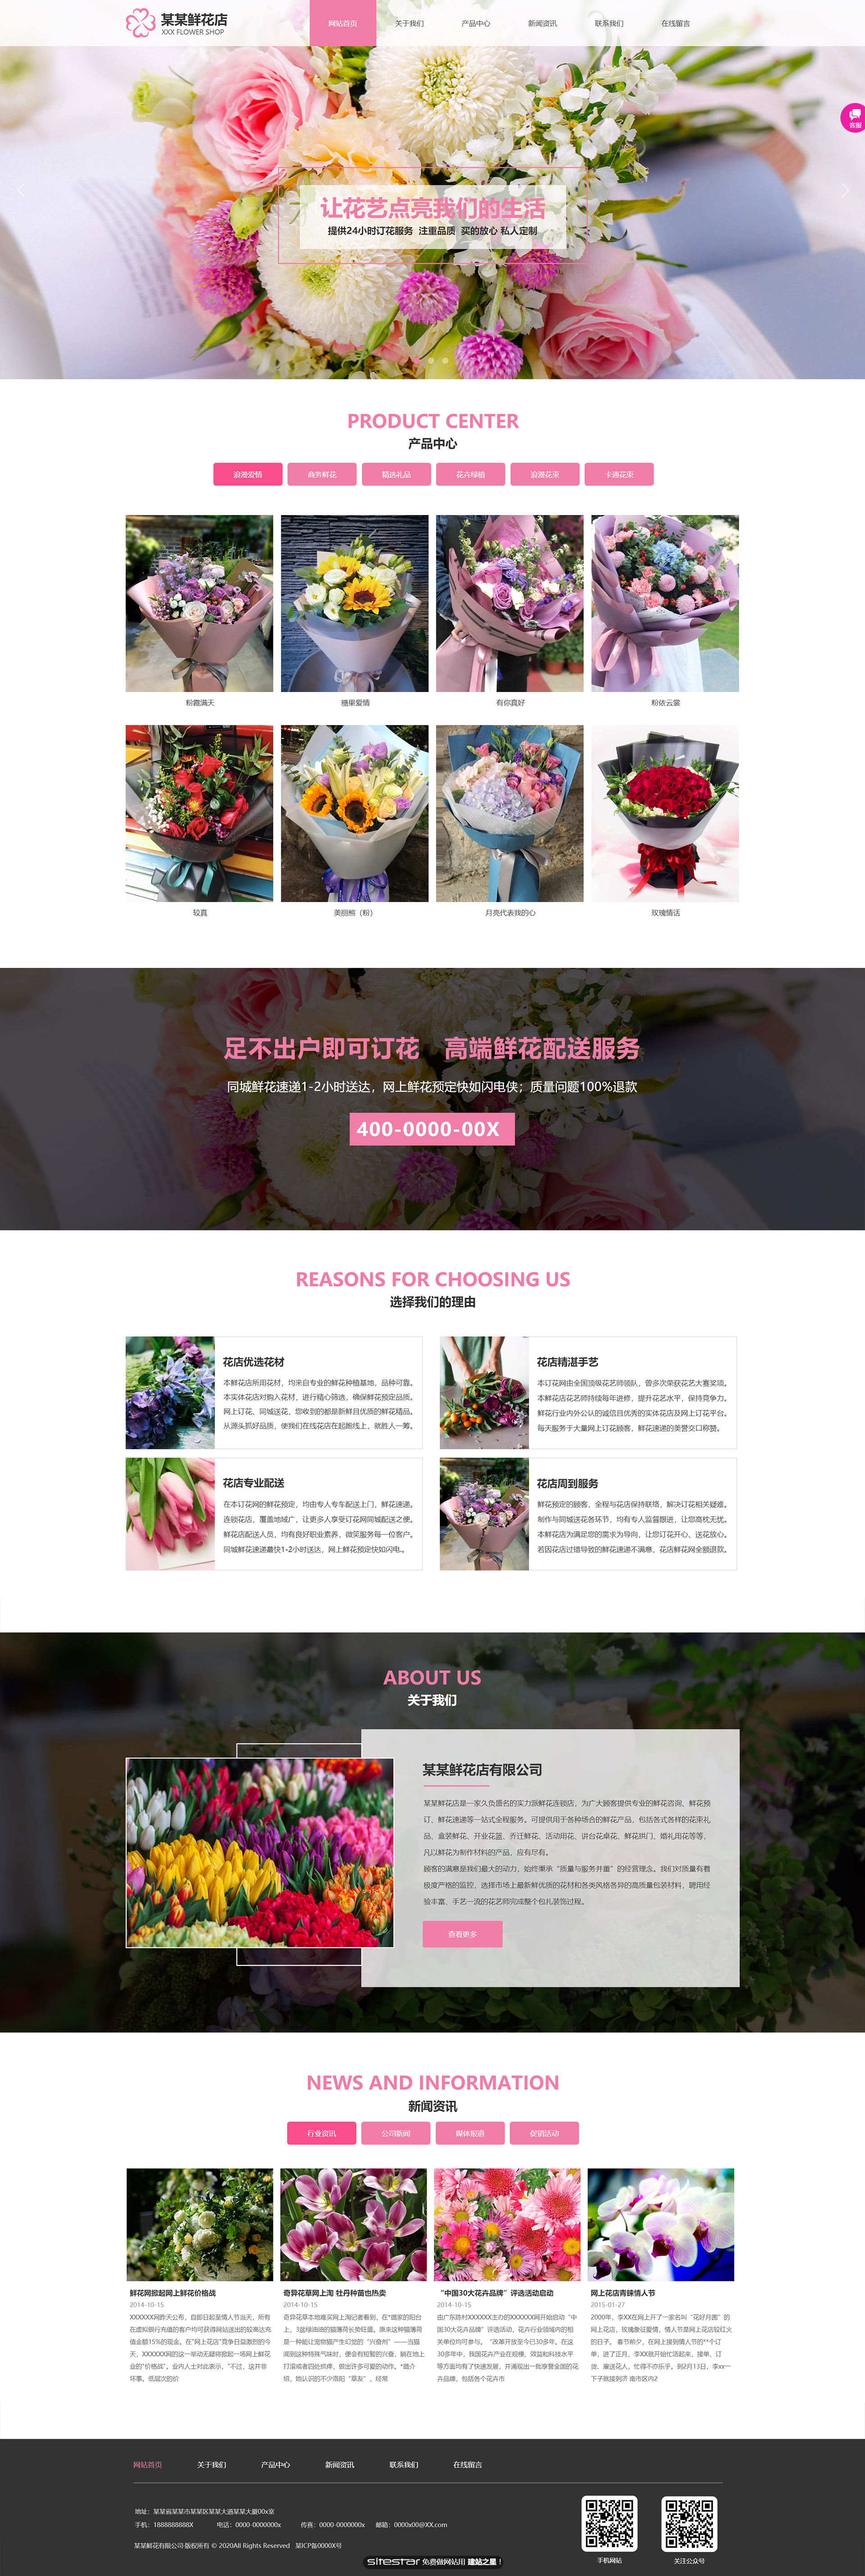 鲜花网站模板-flowers-298